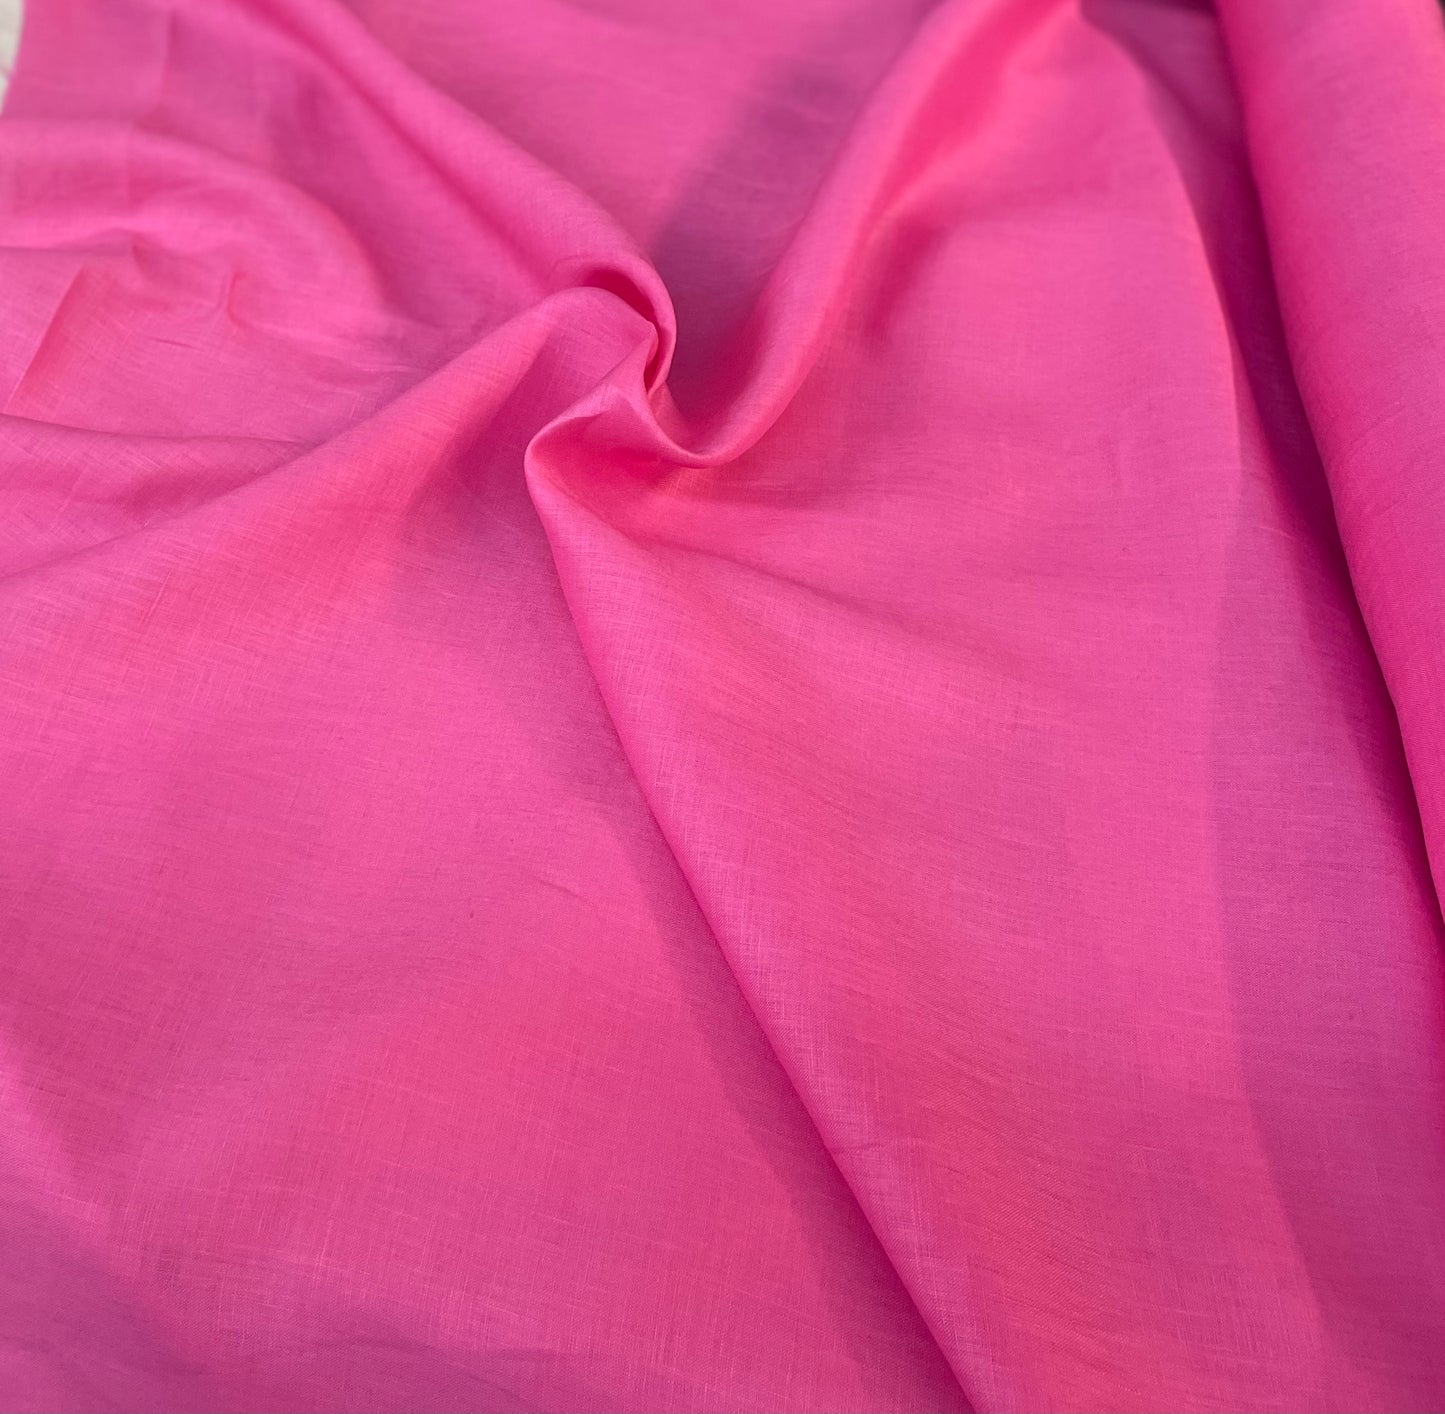 Hot Pink Linen